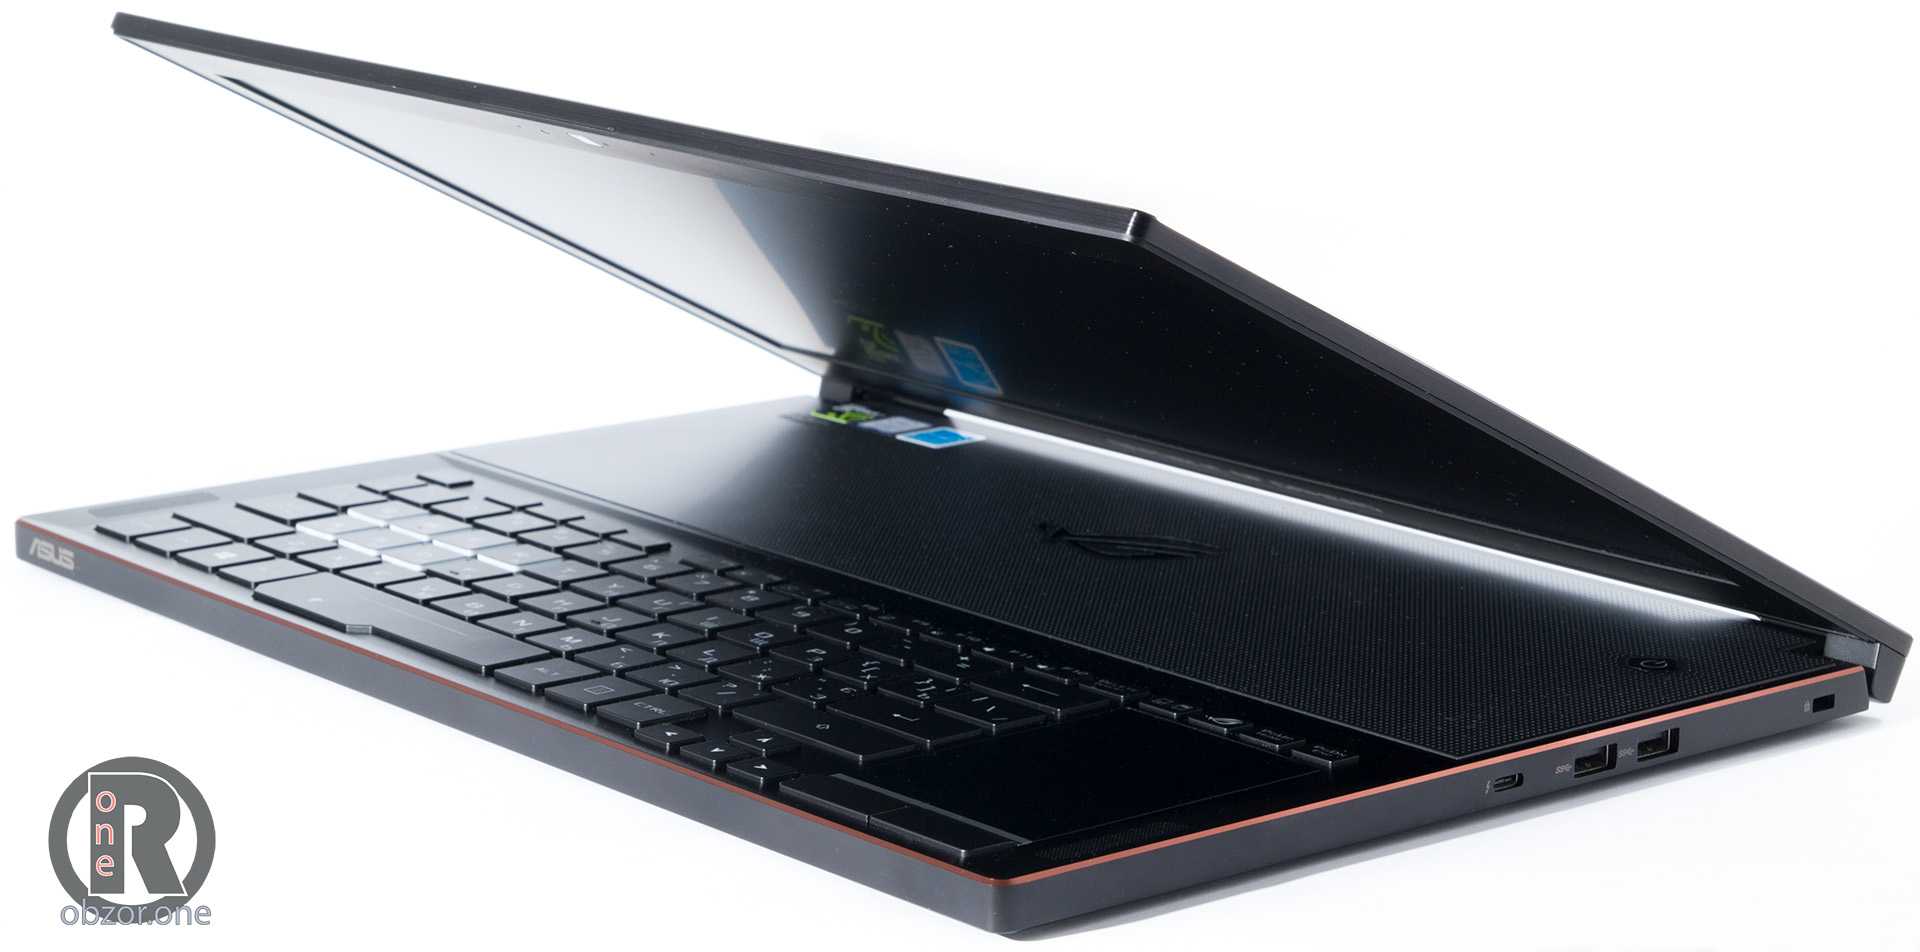 Обзор игрового ноутбука asus rog zephyrus s gx701: технические характеристики, цена, где купить, отзывы, фото